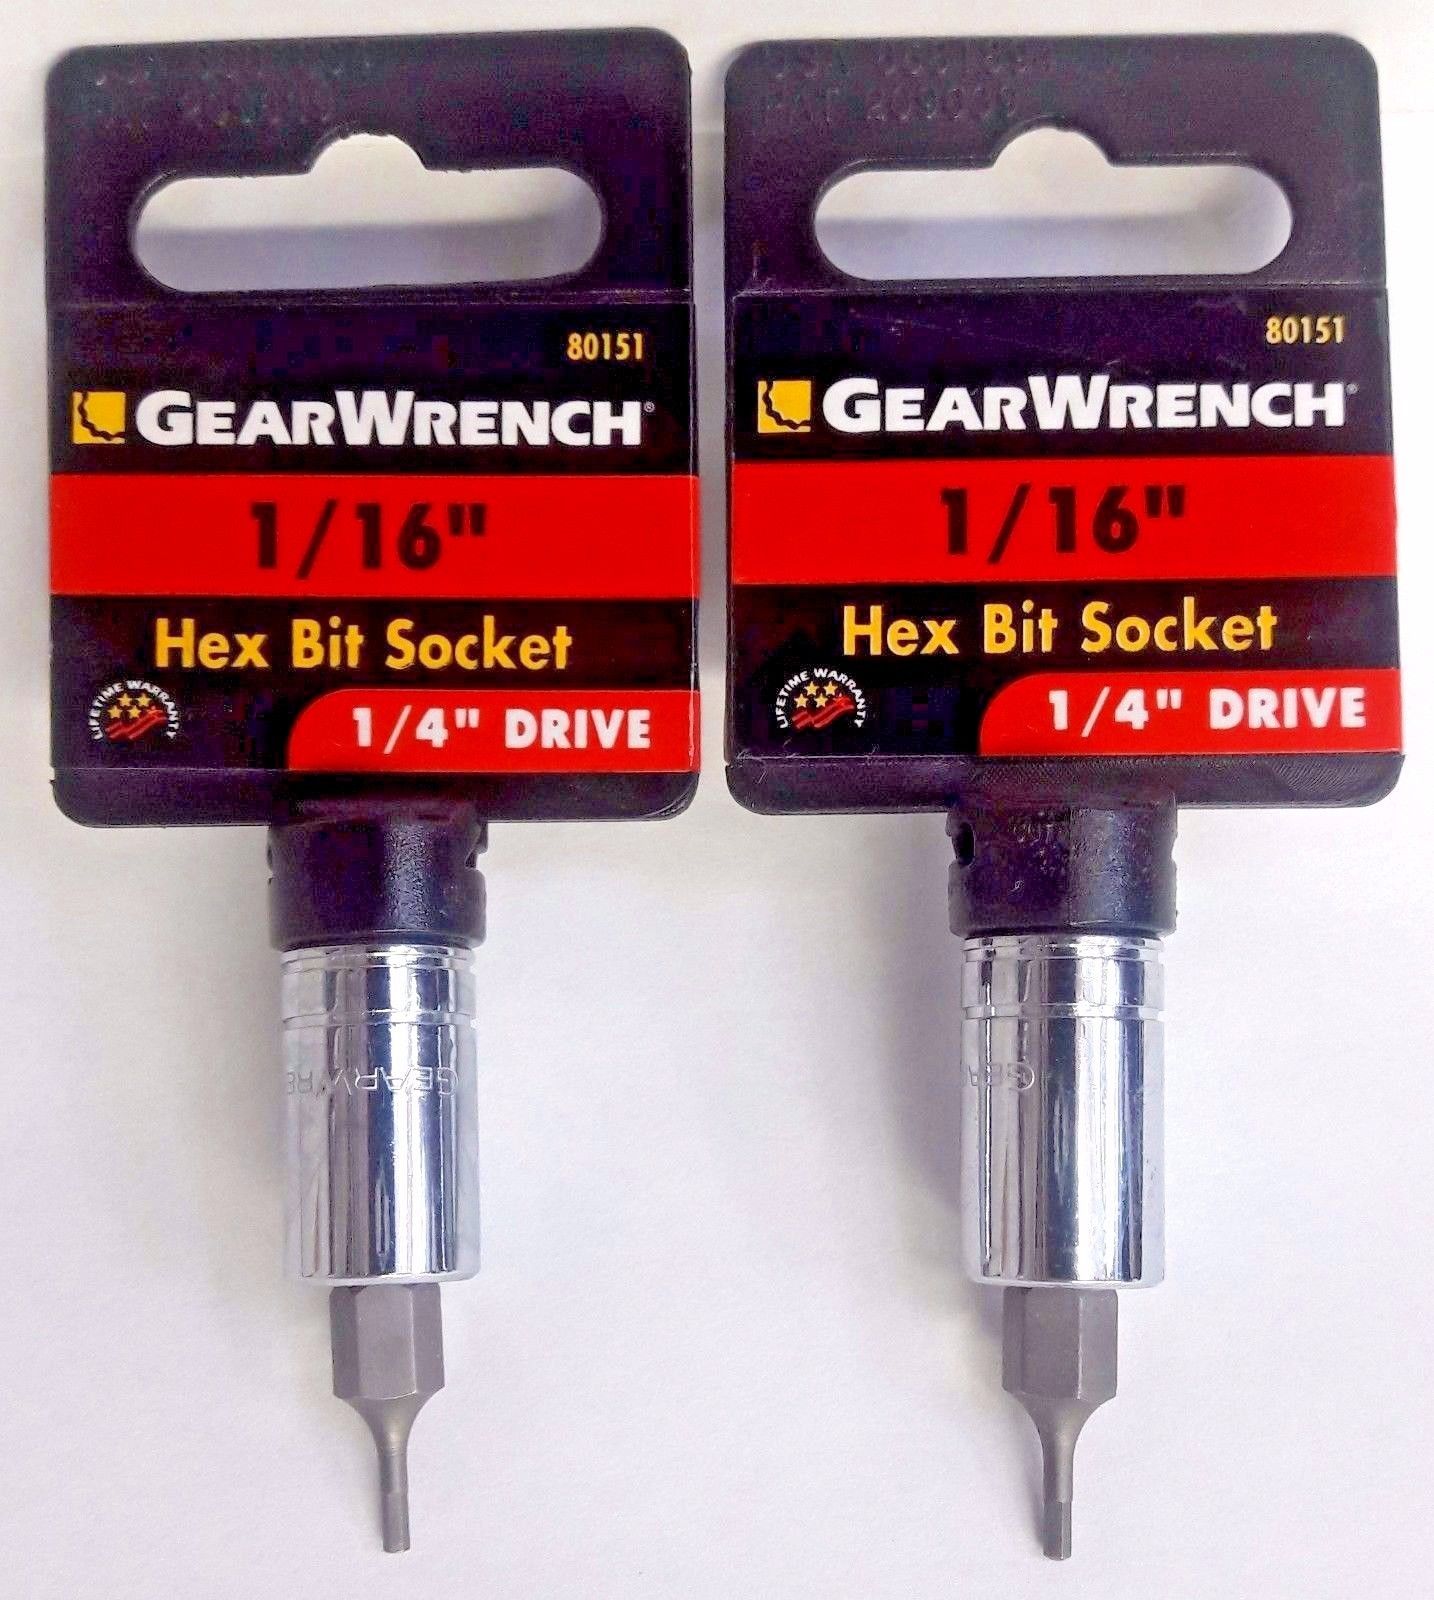 Gearwrench 80151 1/16" Hex Bit Socket 1/4" Drive 2PCS